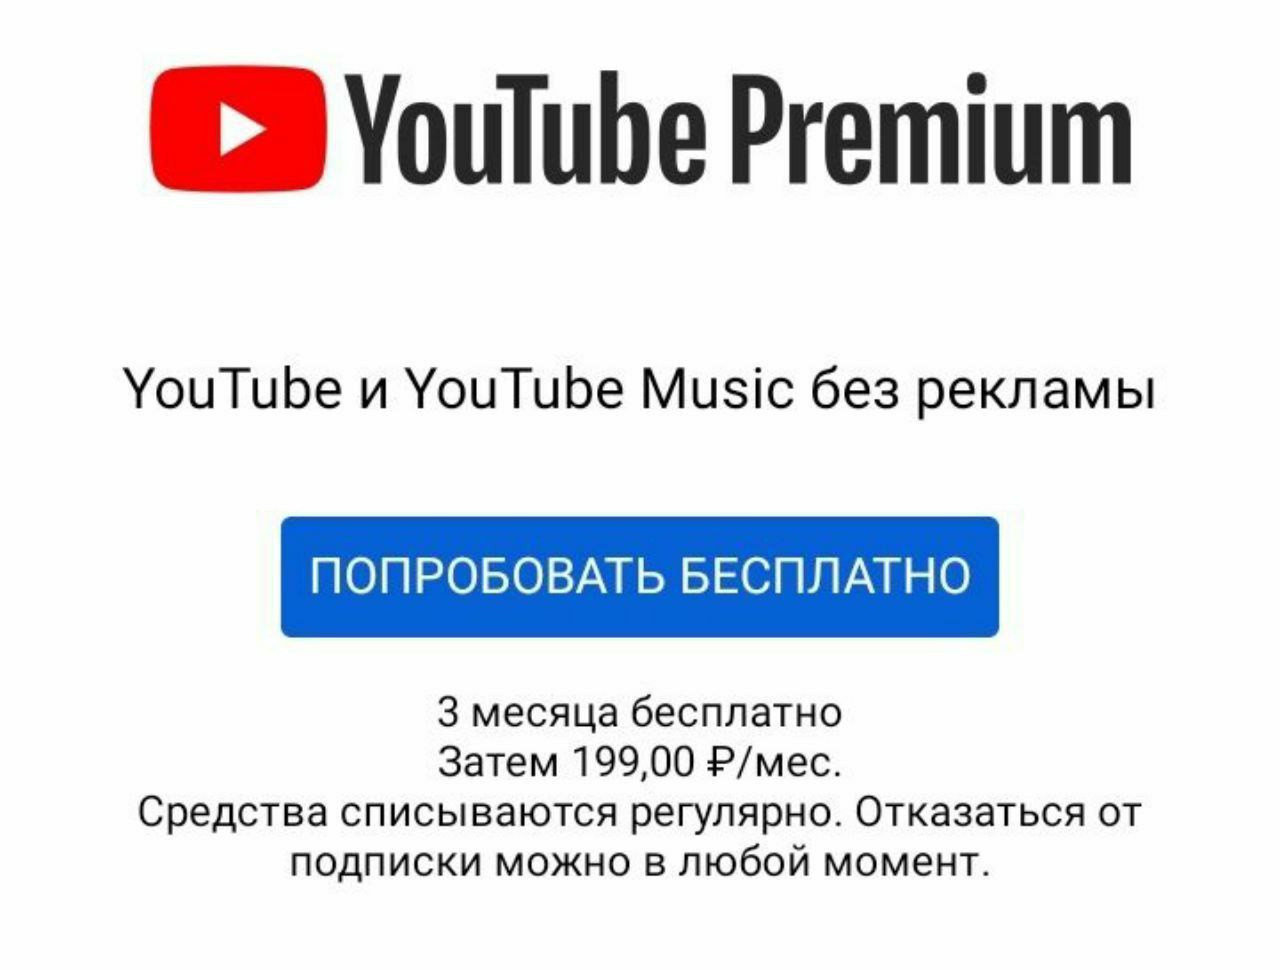 Ютуб мьюзик цена. Youtube премиум. Подписка youtube Premium. Подписка youtube Music. Реклама youtube Premium.